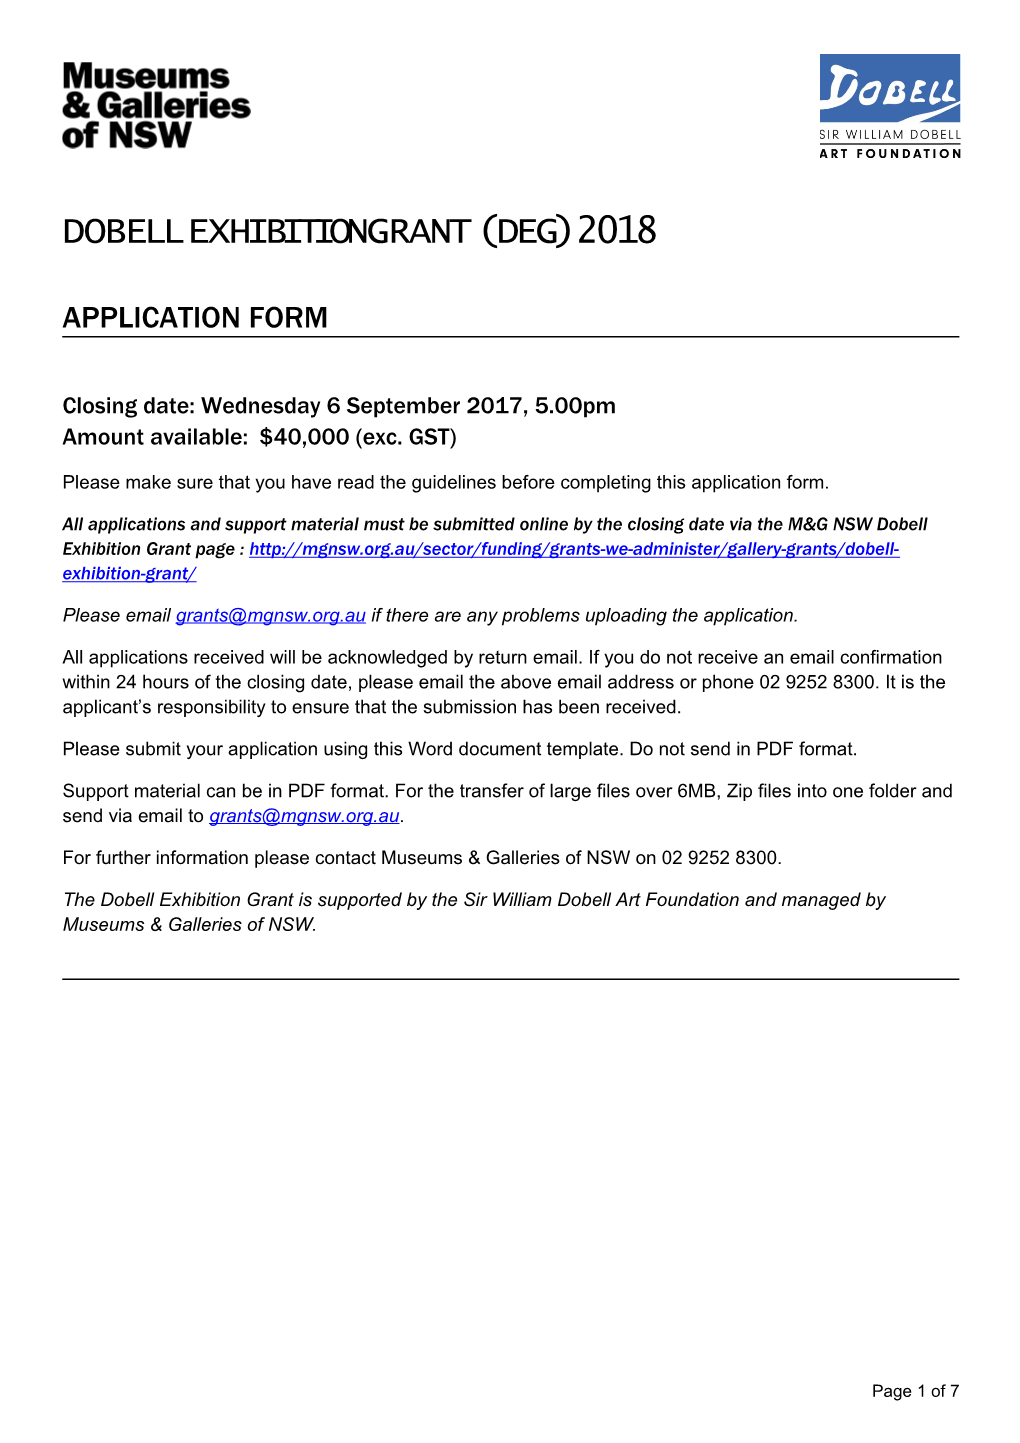 Dobell Exhibition Grant (Deg) 2018